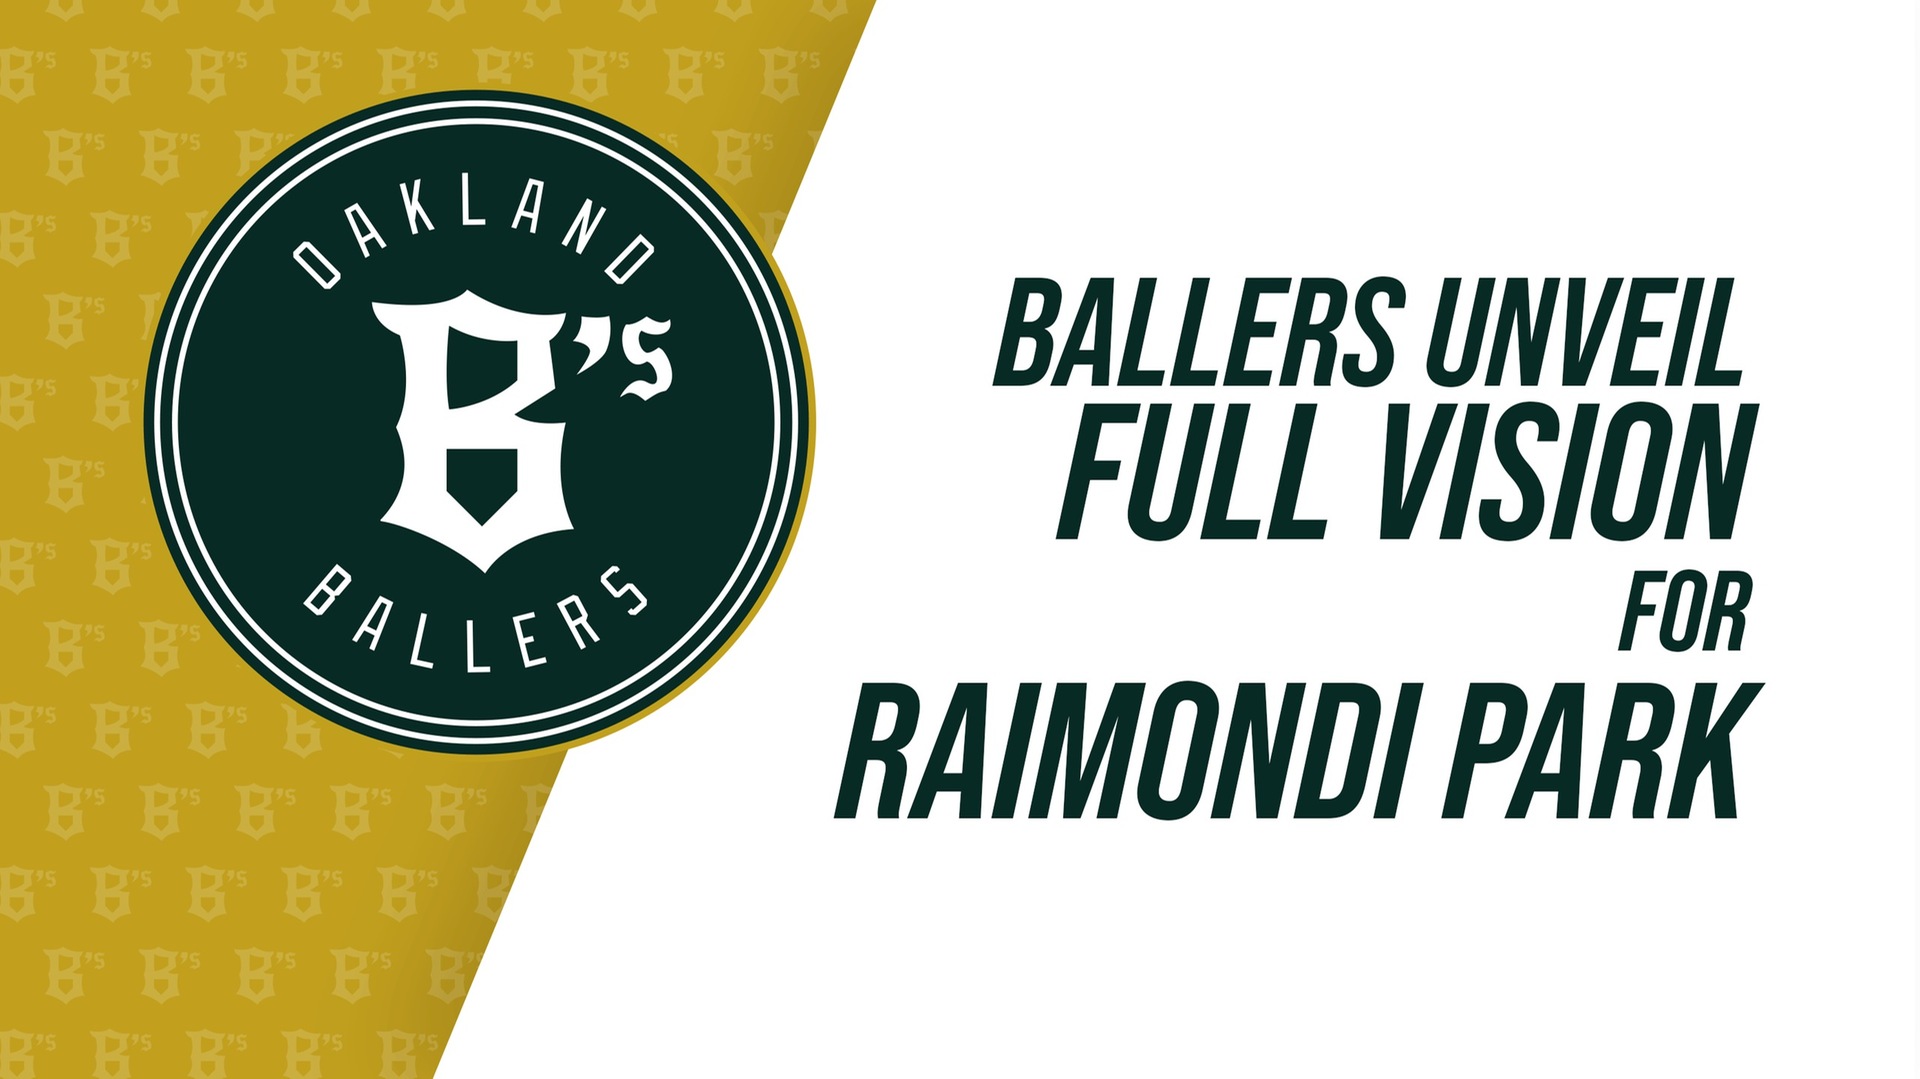 Ballers unveil full vision for Raimondi Park